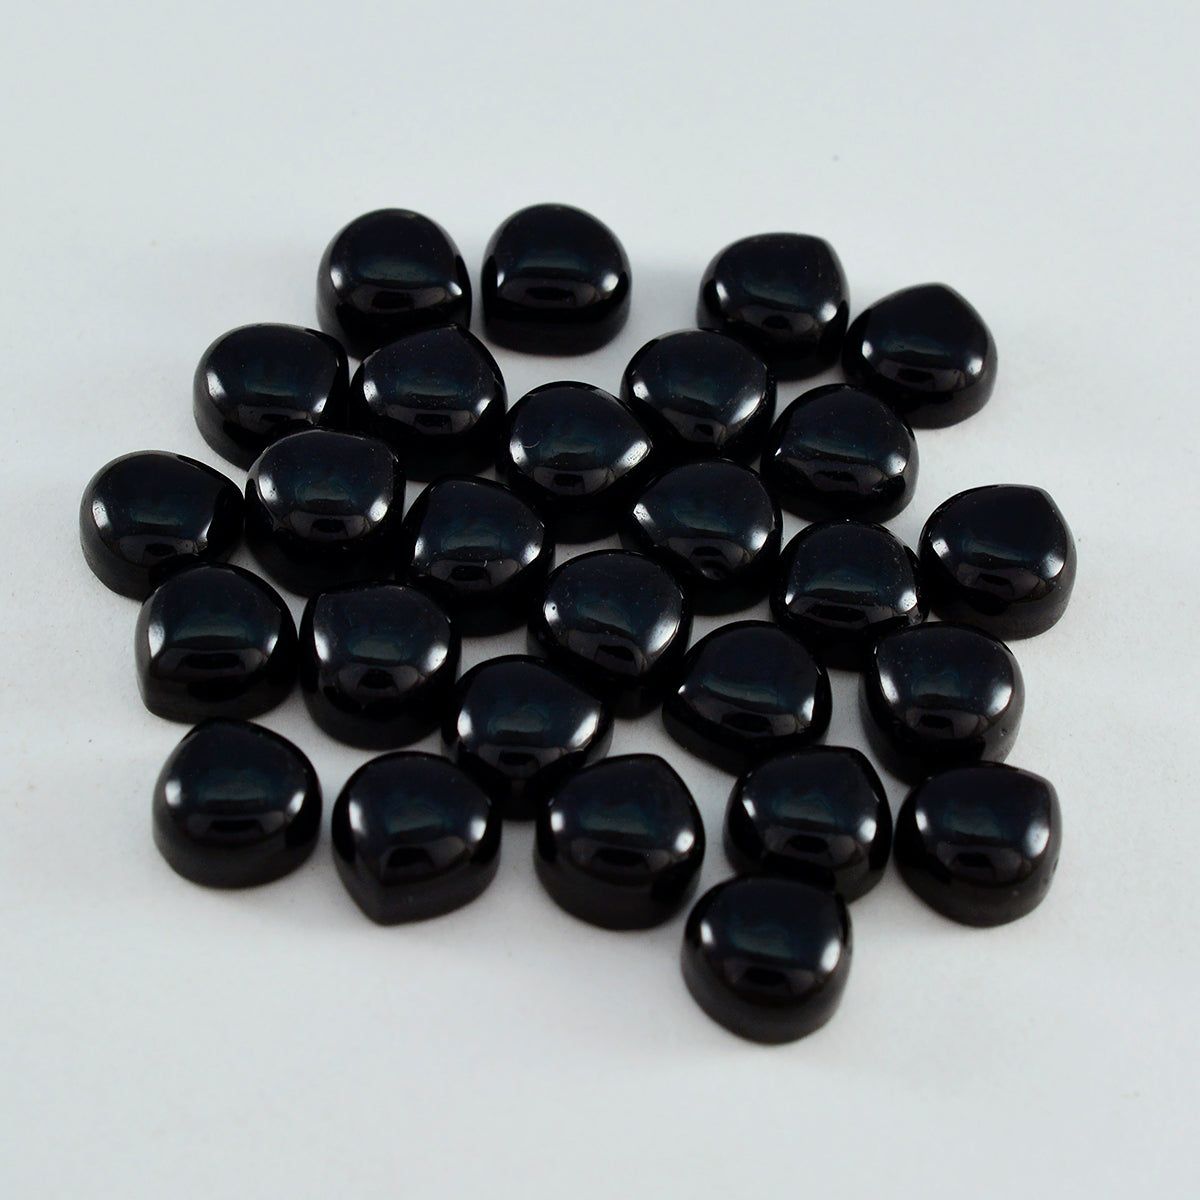 riyogems 1 шт. черный оникс кабошон 7x7 мм в форме сердца сладкий качественный свободный драгоценный камень